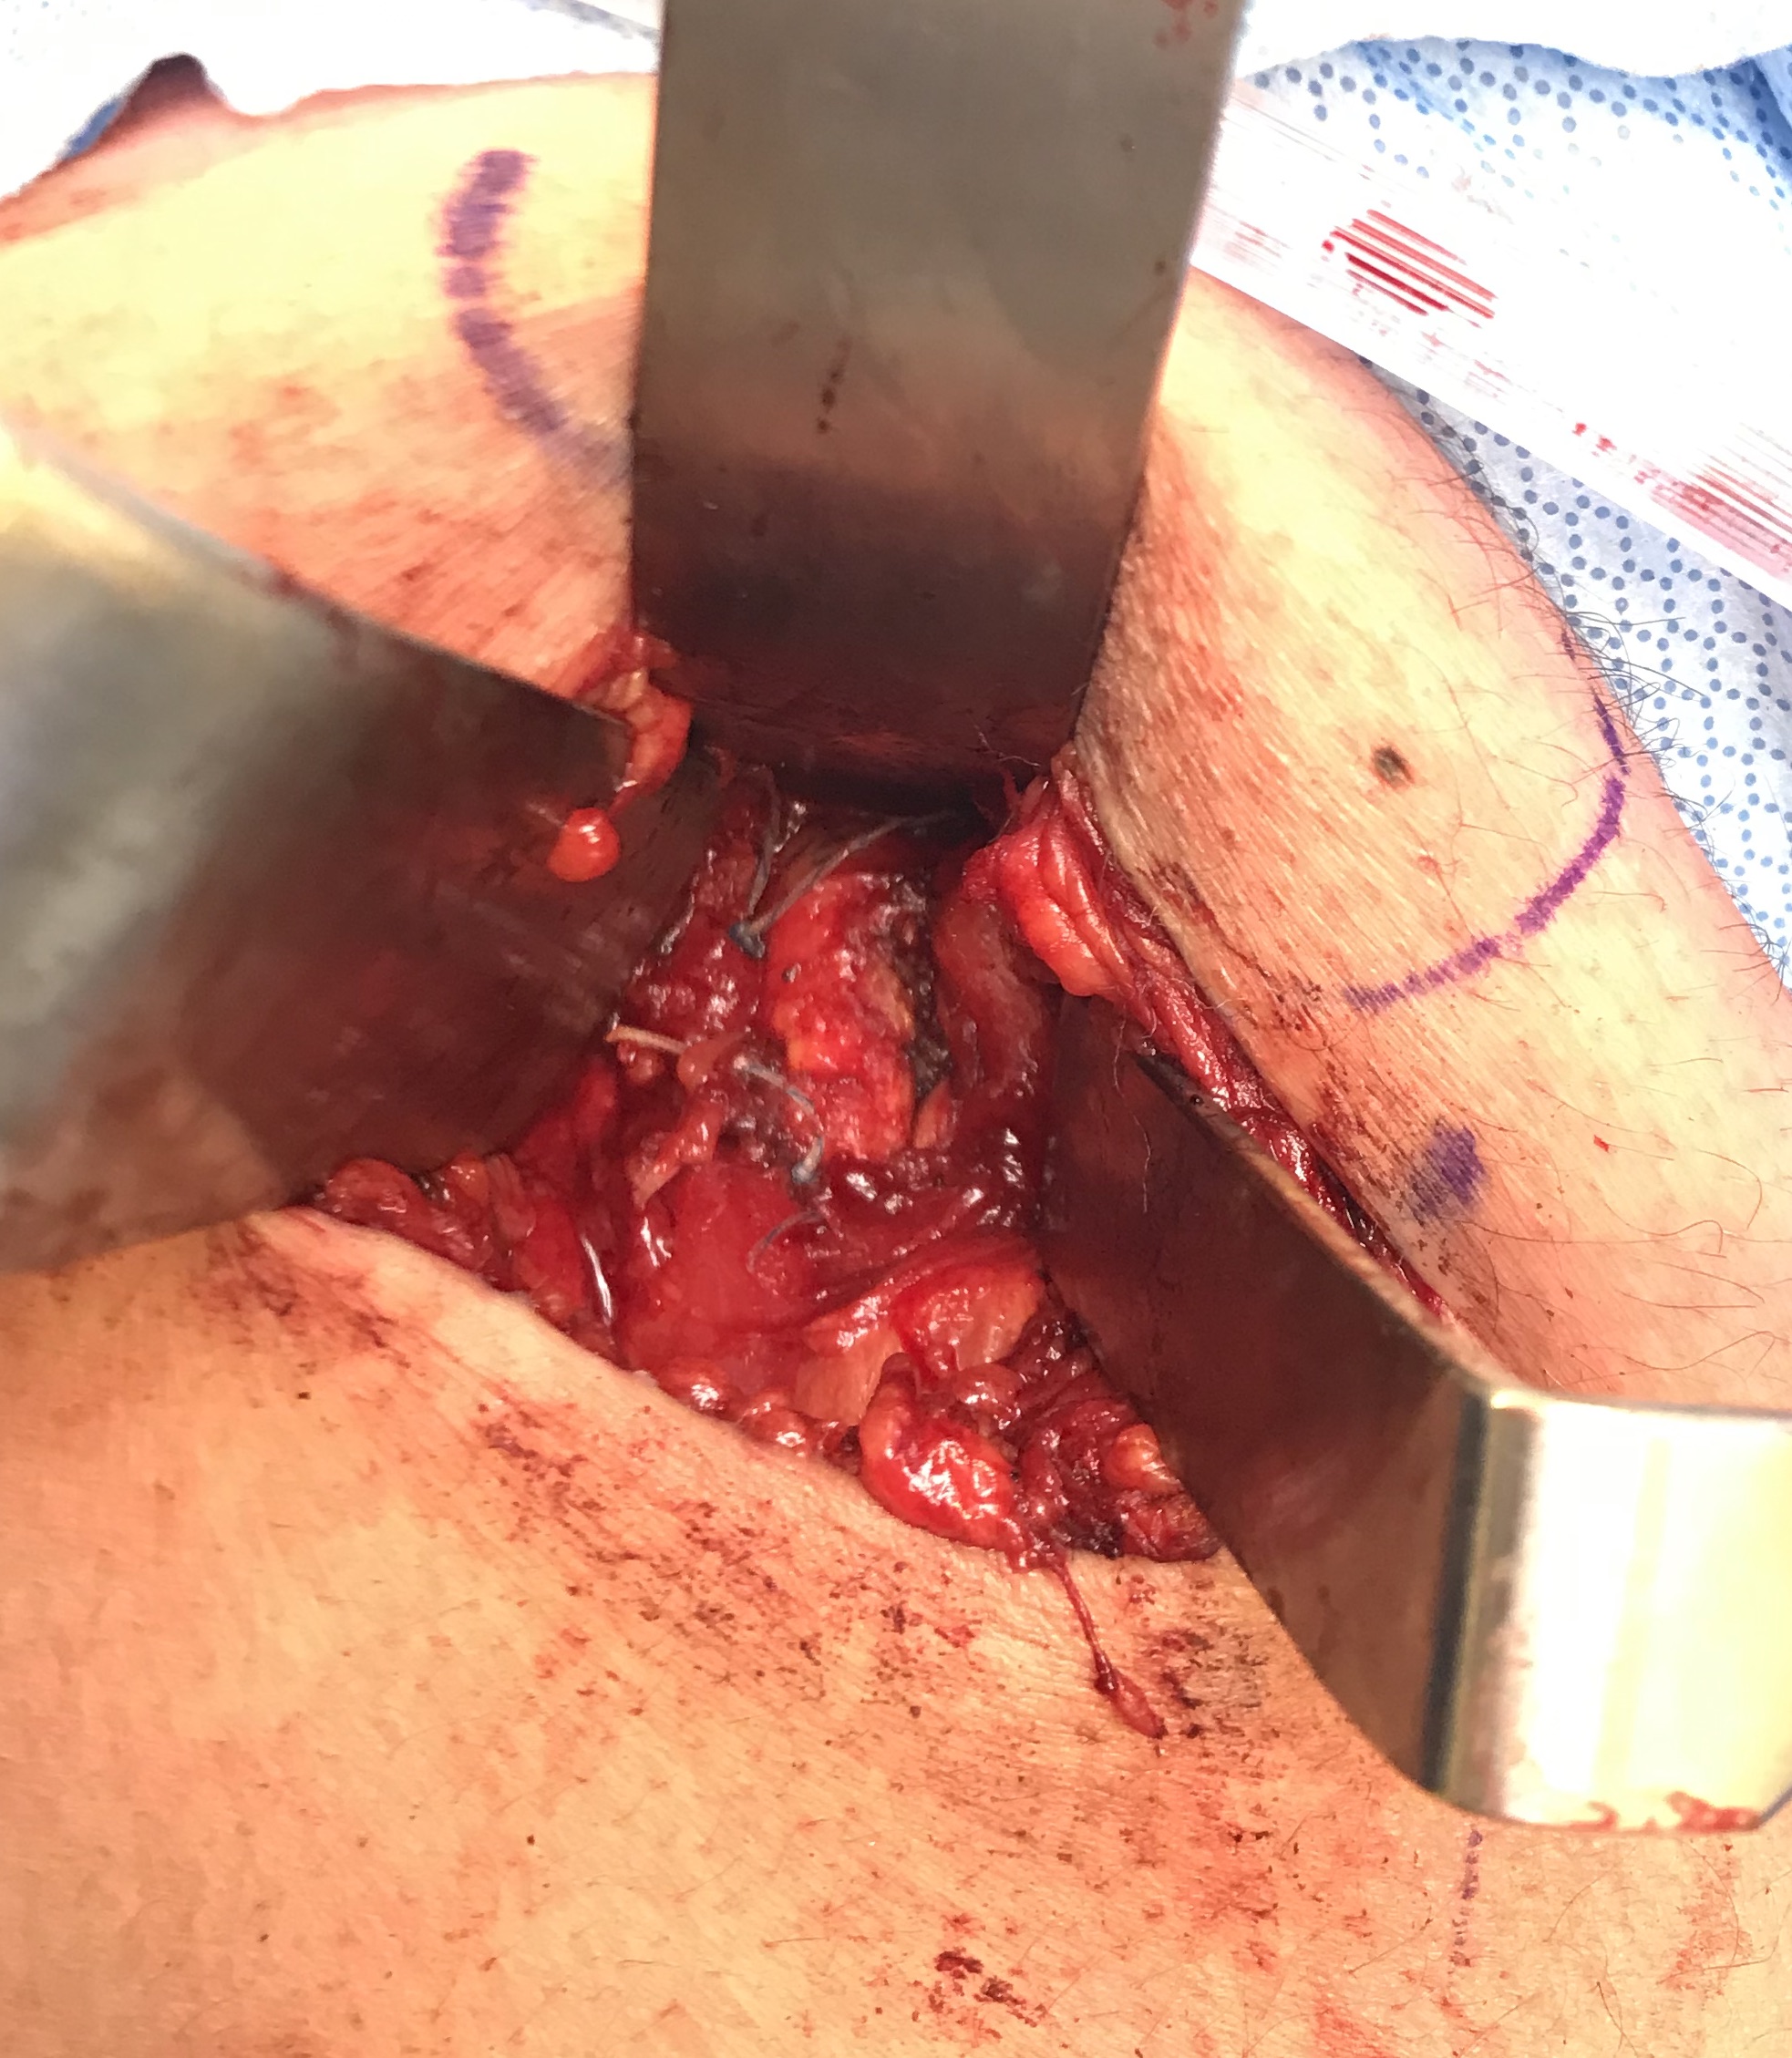 Post suture repair